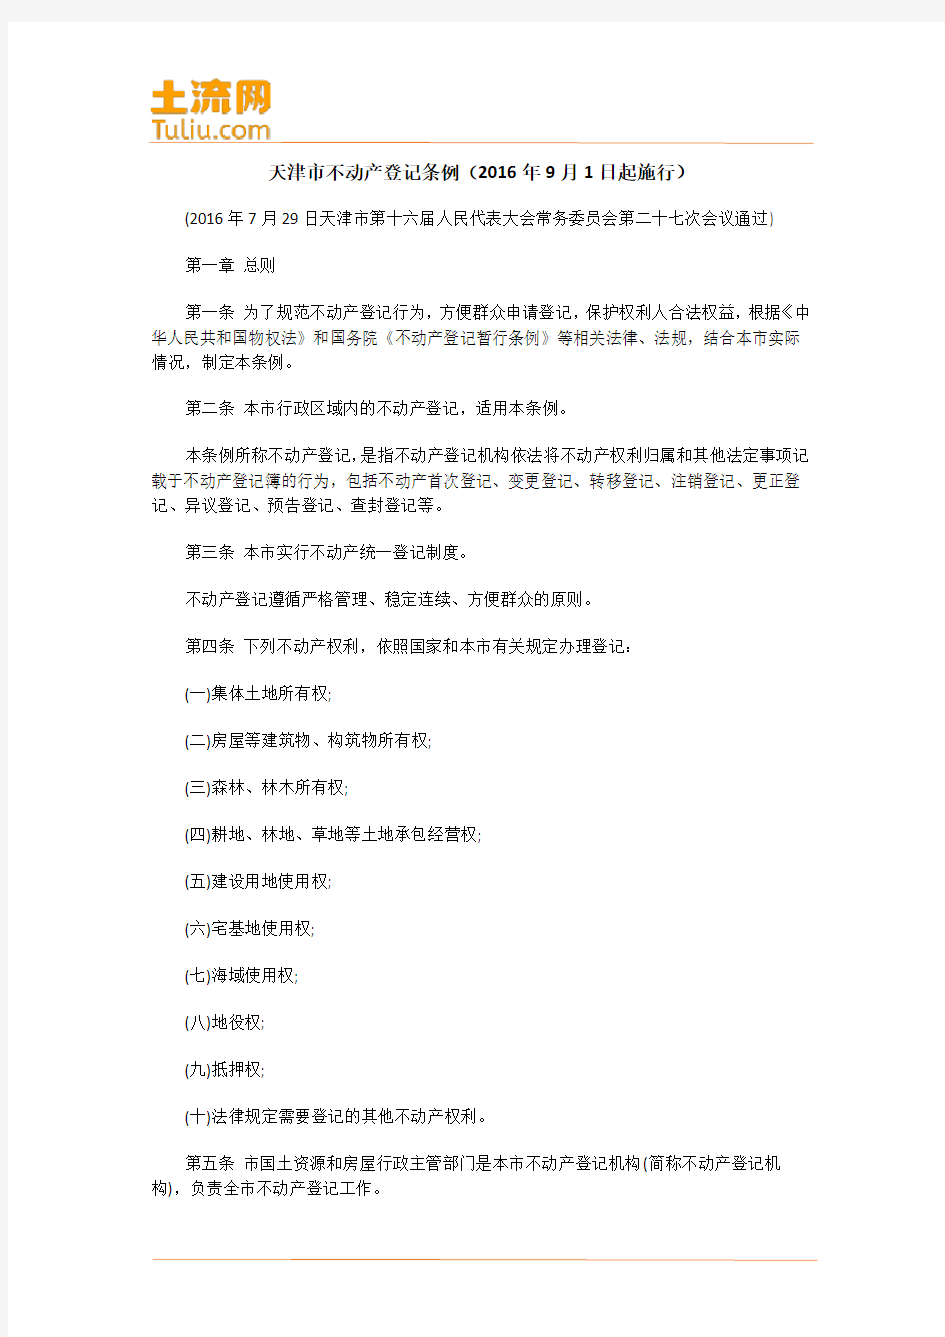 天津市不动产登记条例(2016年9月1日起施行)